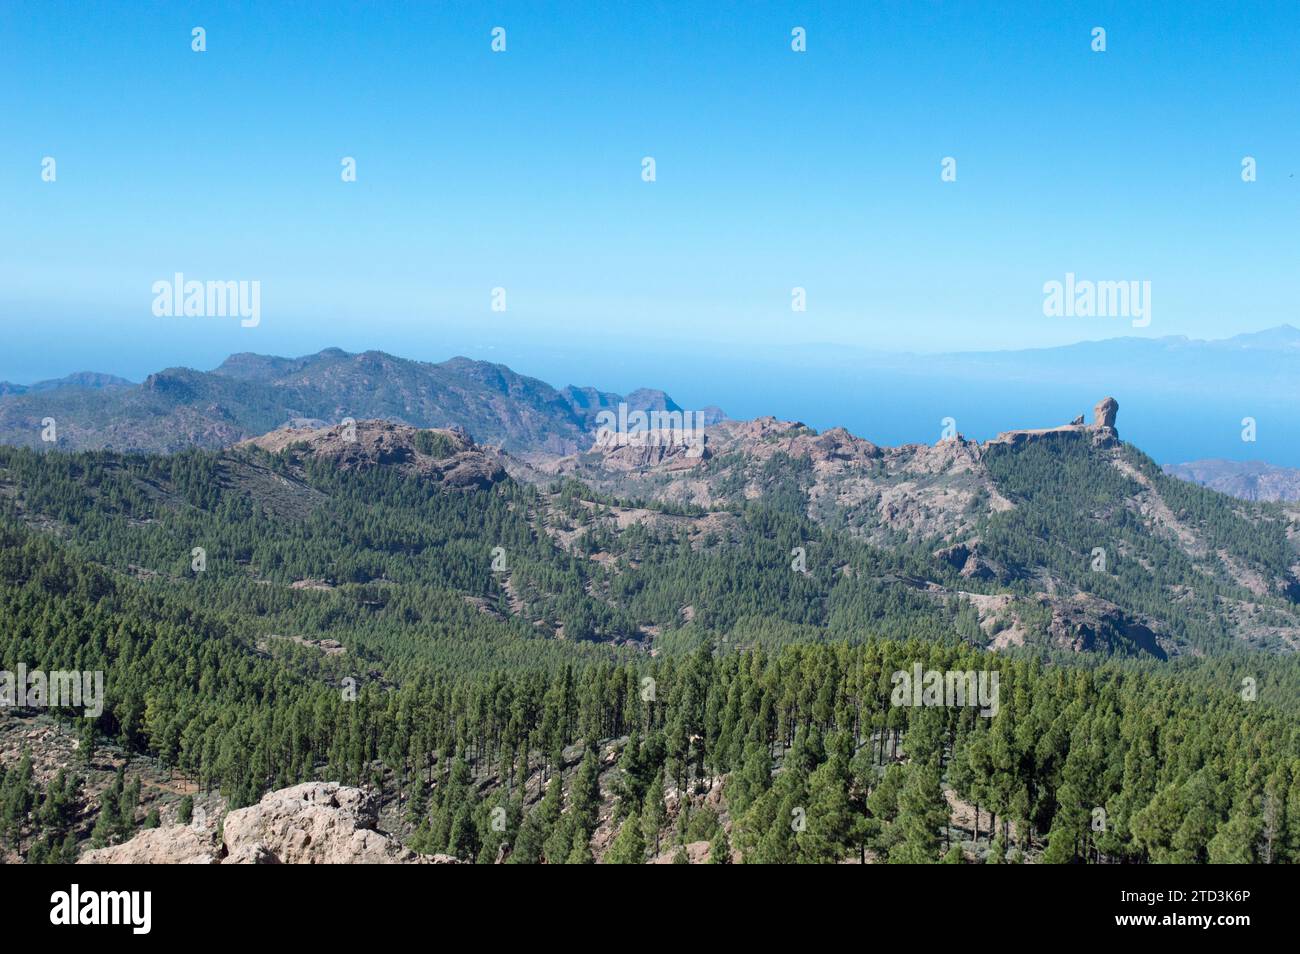 Vista desde el mirador del Pico de las Nieves Foto Stock